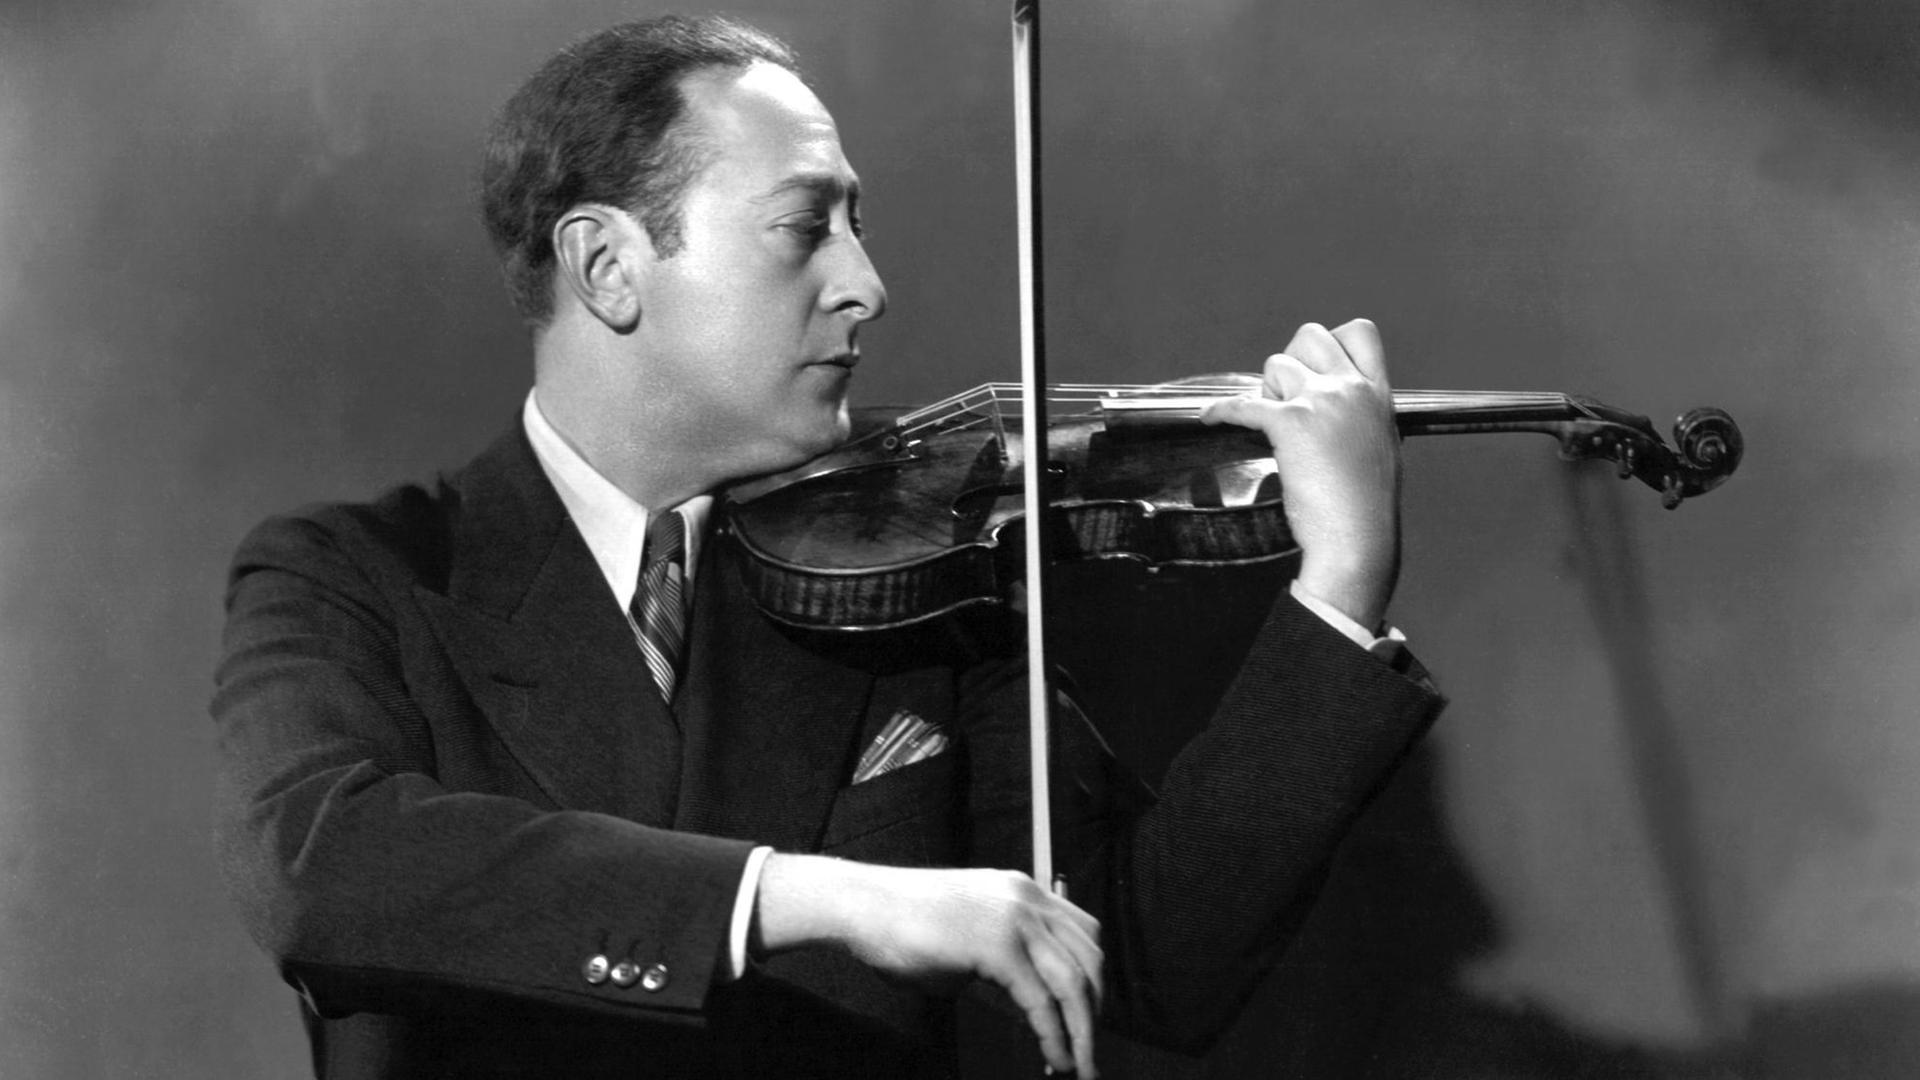 Schwarz-weiß-Fotografie, sie zeigt den Geiger Jascha Heifetz im Profil, er spielt Geige und führt den Bogen mit der rechten Hand. Er hat kurz dunkle Haare, trägt einen schwarzen Anzug mit weißem Hemd und Schlips